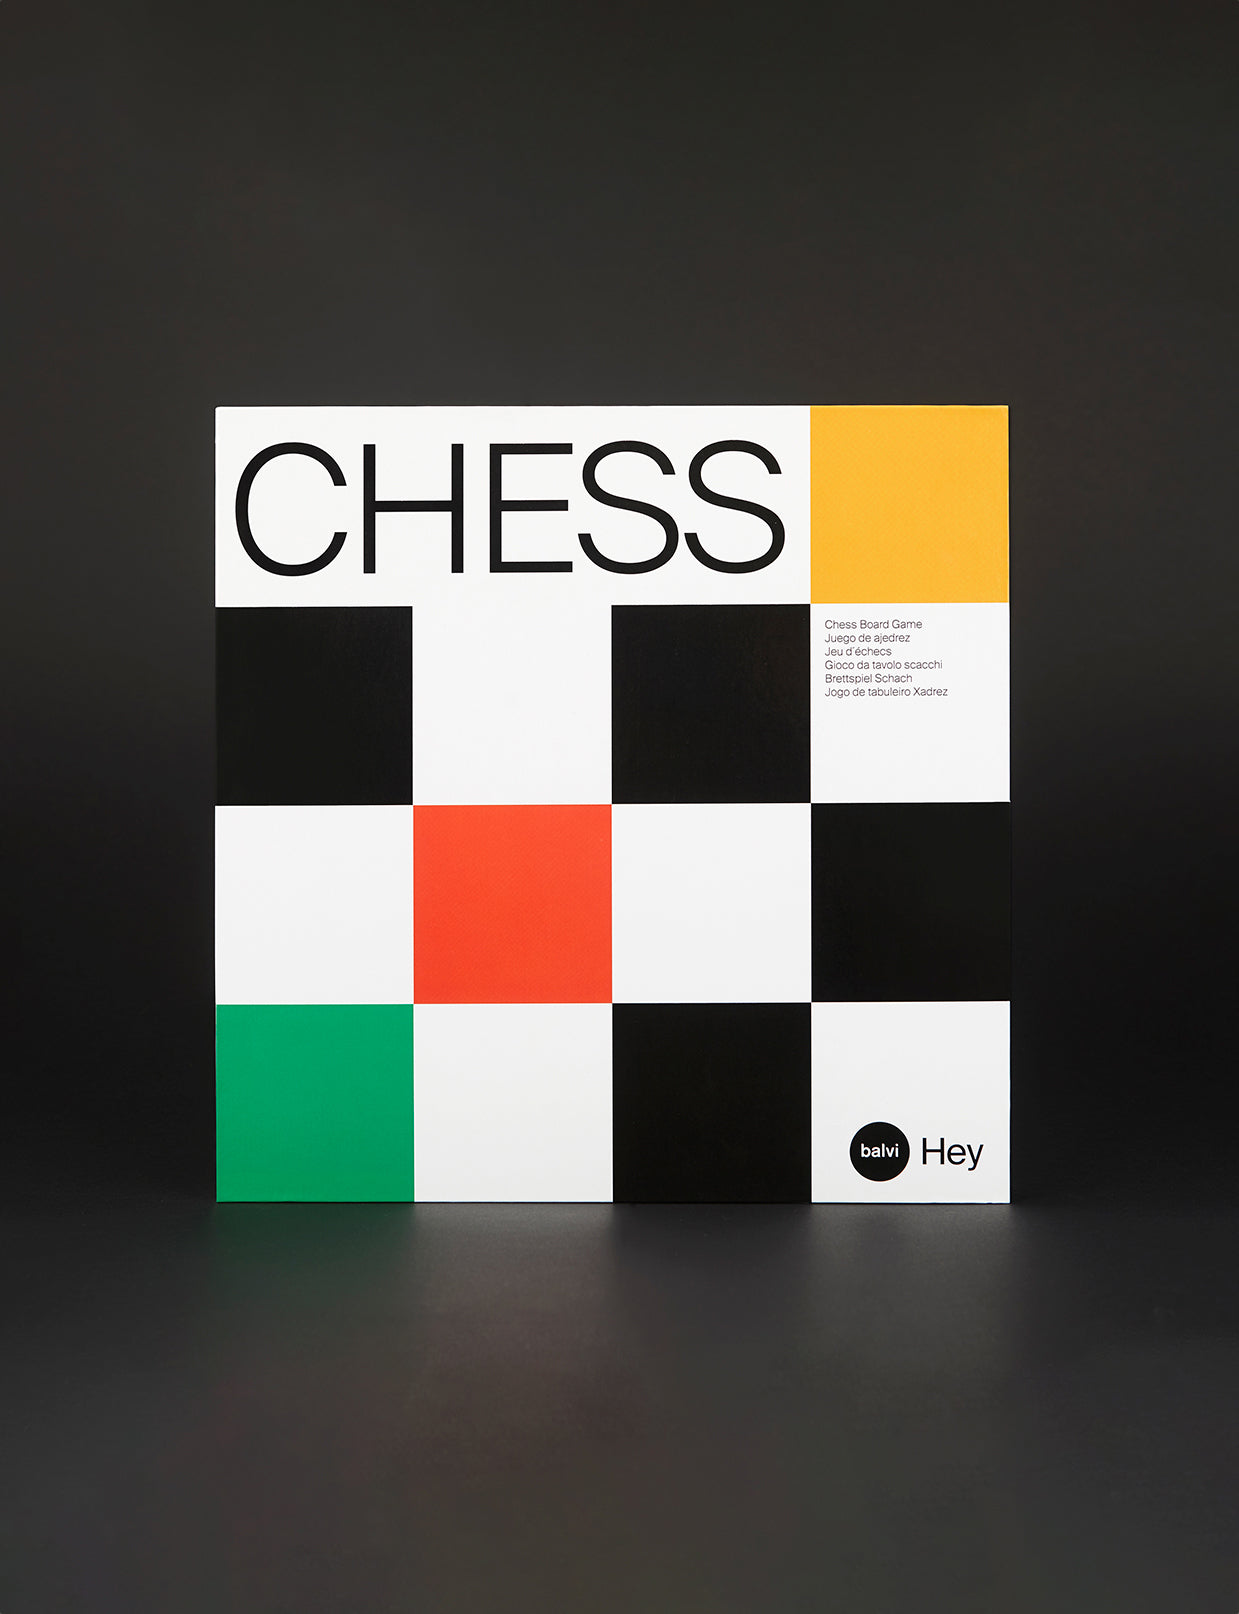 Balvi - Hey Chess  board game